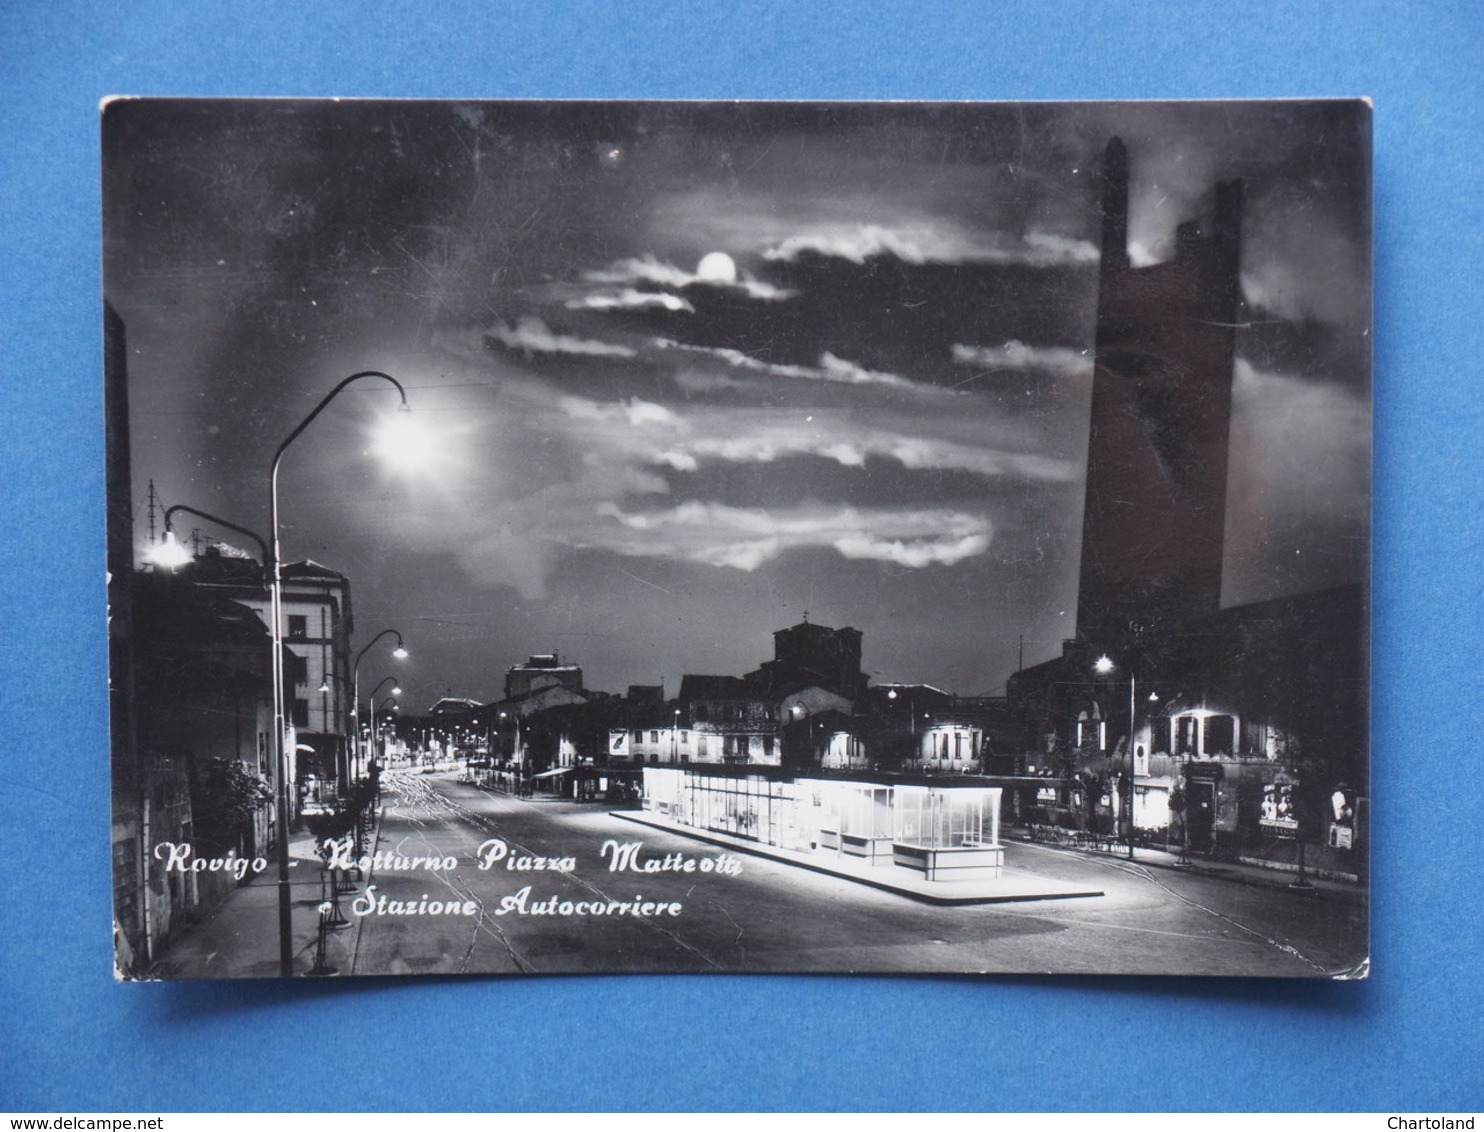 Cartolina Rovigo - Notturno Piazza Matteotti E Stazione Autocorriere - 1957 - Rovigo